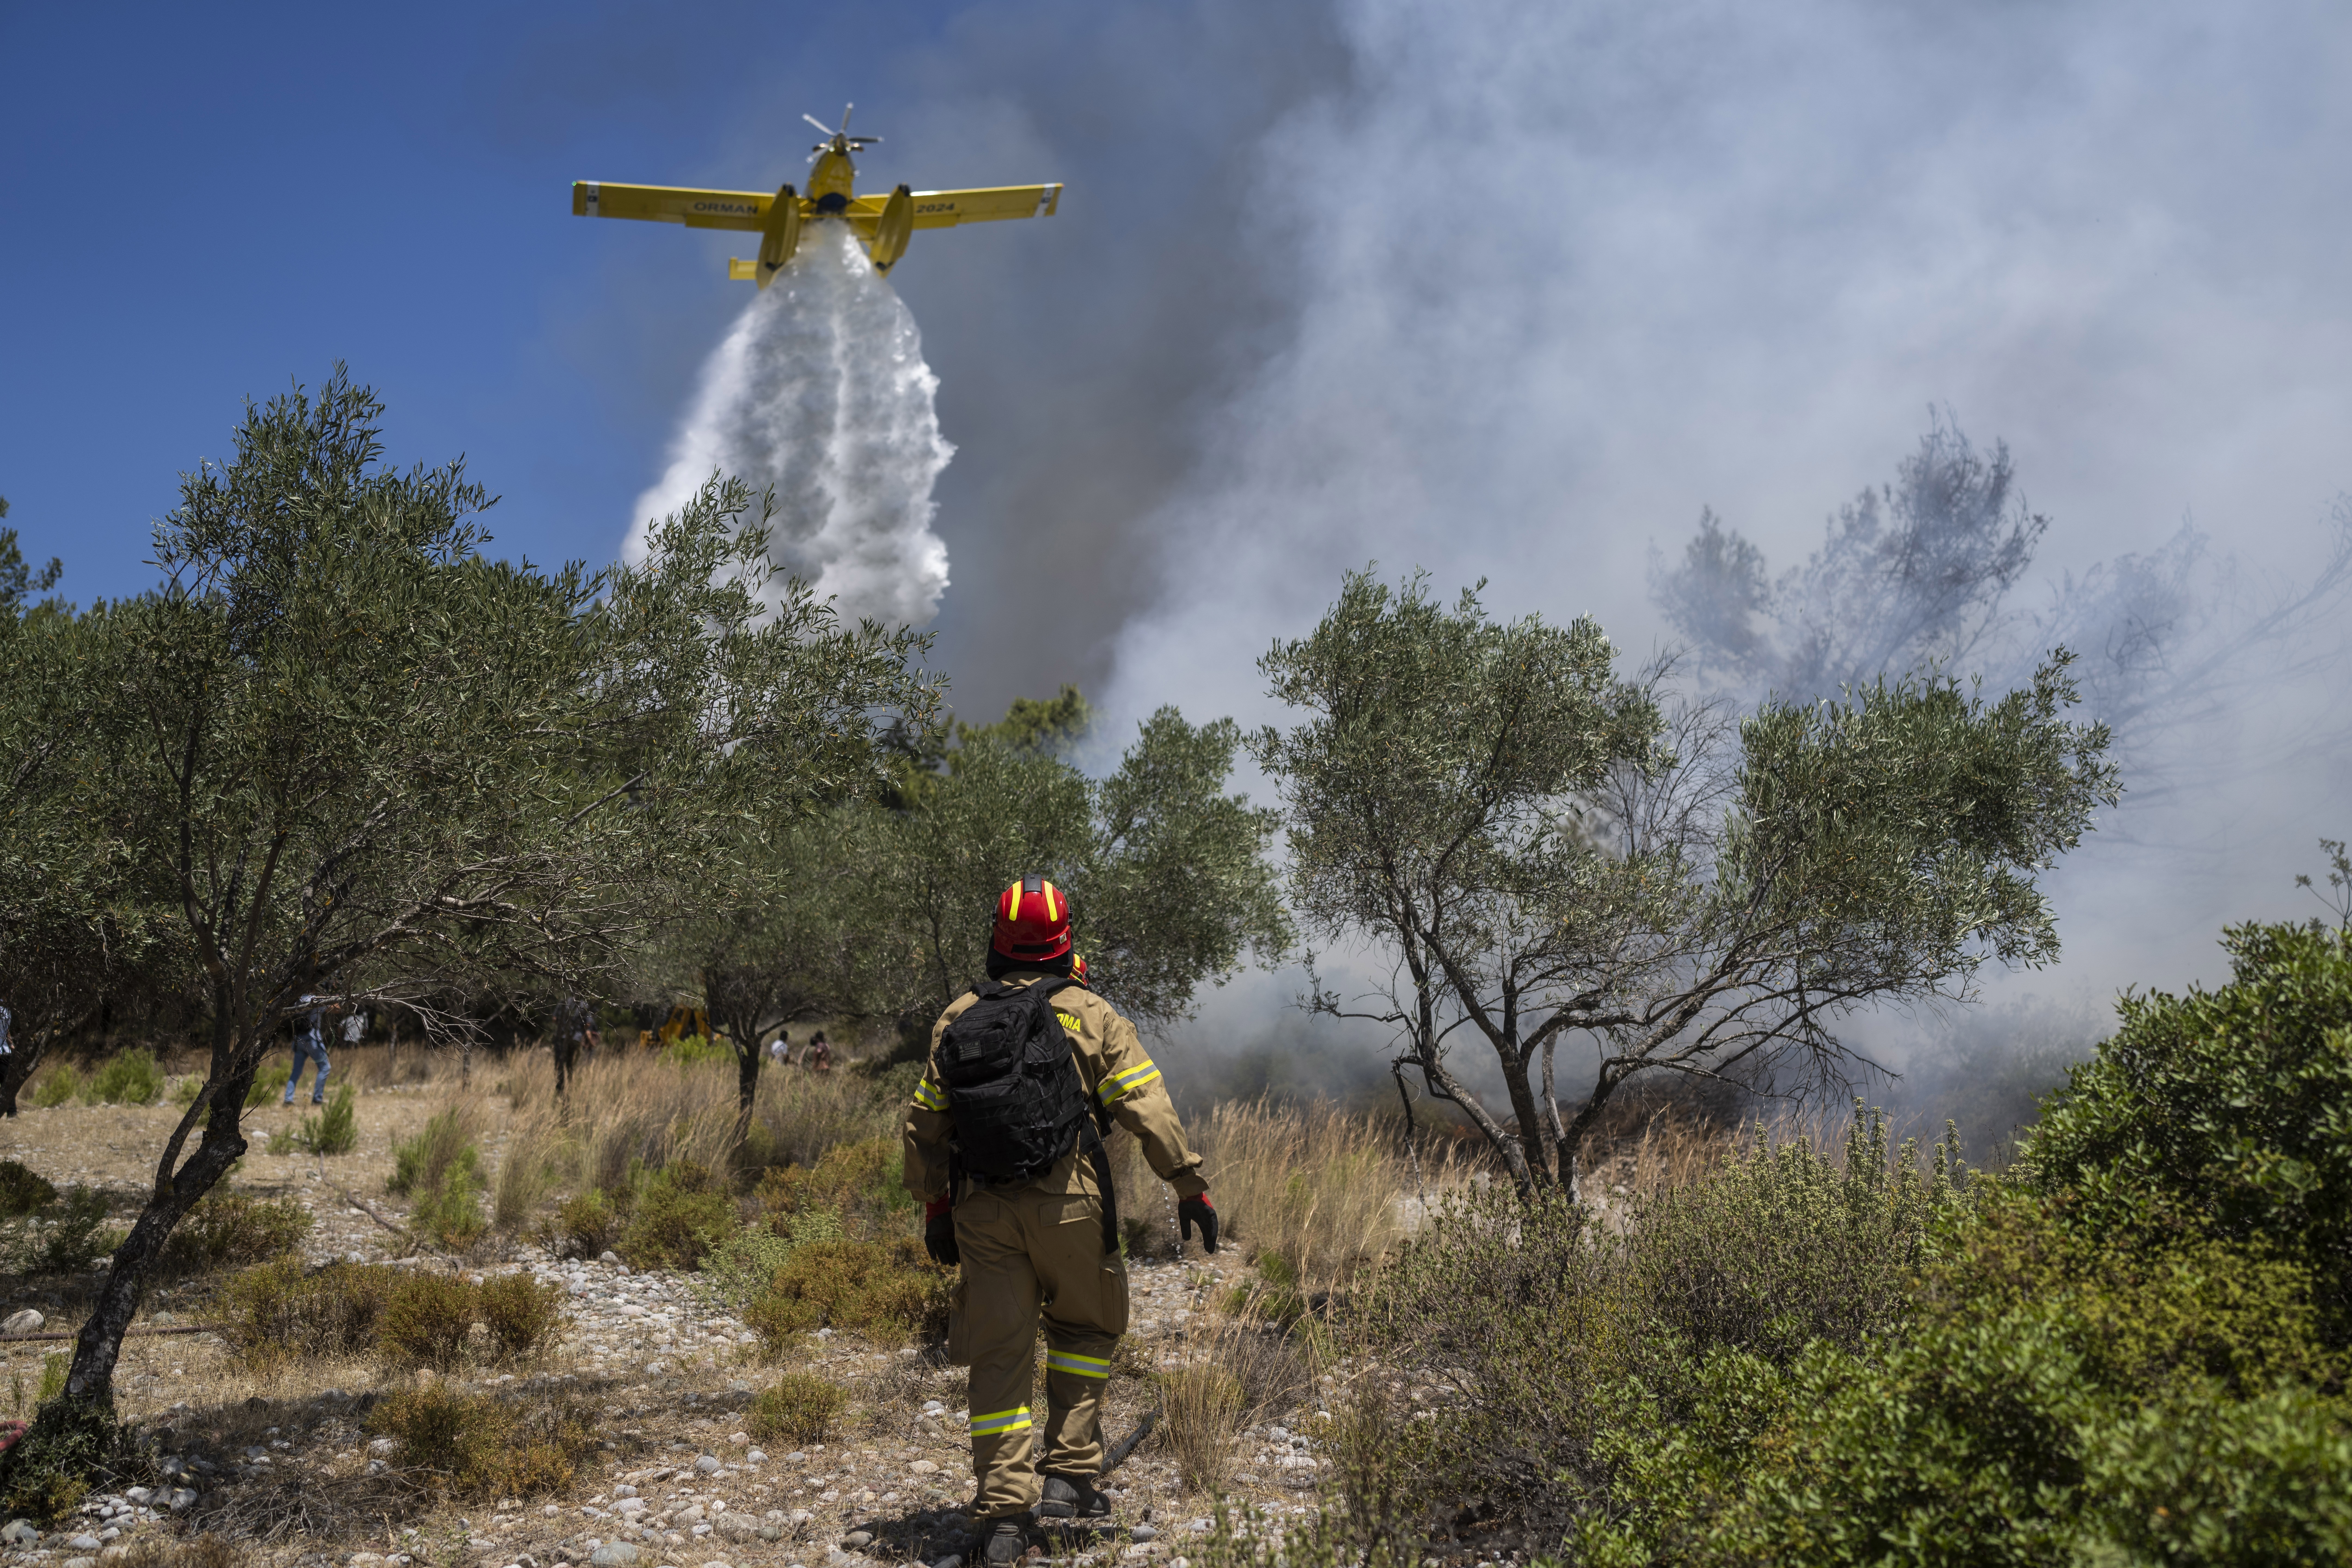 ΕΕ – Μ. Ουζβάρι: H Eυρωπαϊκή Επιτροπή έχει κινητοποιήσει συνολικά εννέα πυροσβεστικά αεροσκάφη για την αντιμετώπιση των πυρκαγιών στην Ελλάδα